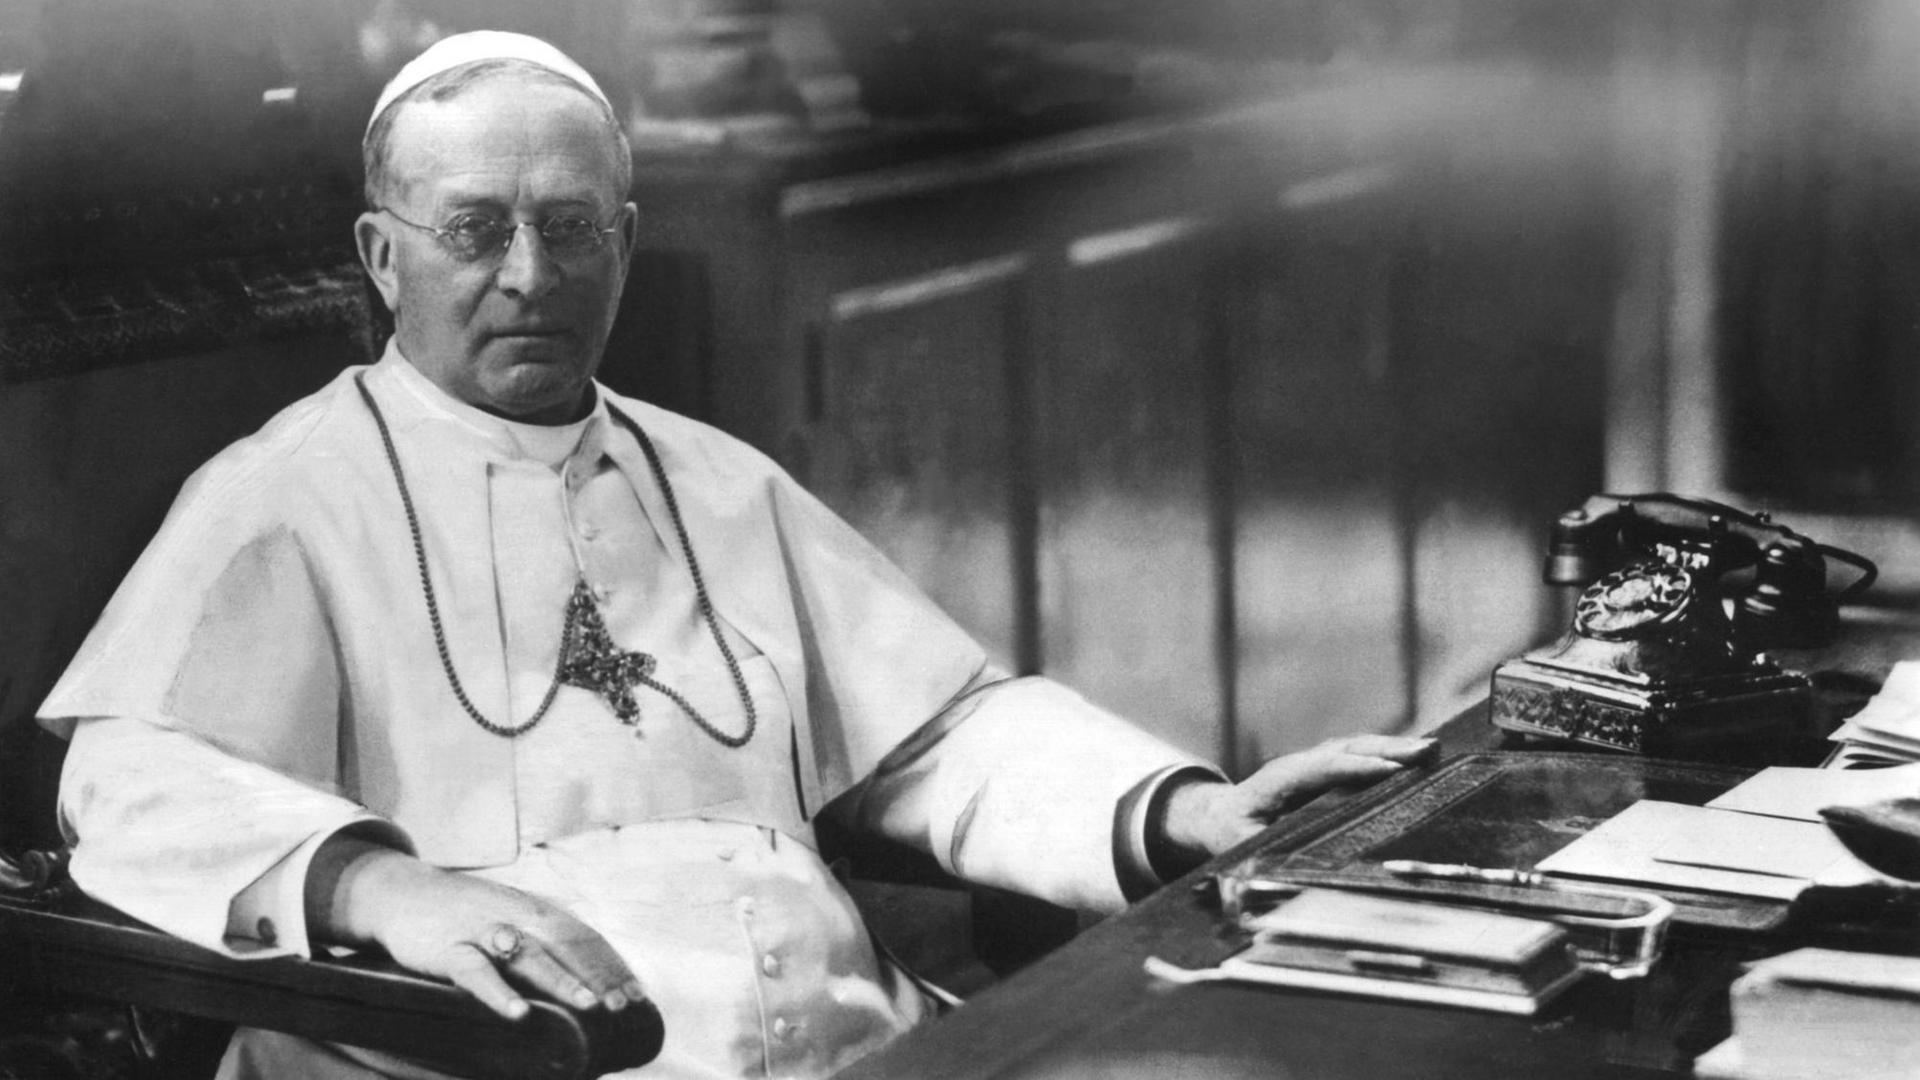 Der am 31. Mai 1857 als Achille Ratti geborene Papst Pius XI. in einer zeitgenössischen Aufnahme. Er starb am 10. Februar 1949.